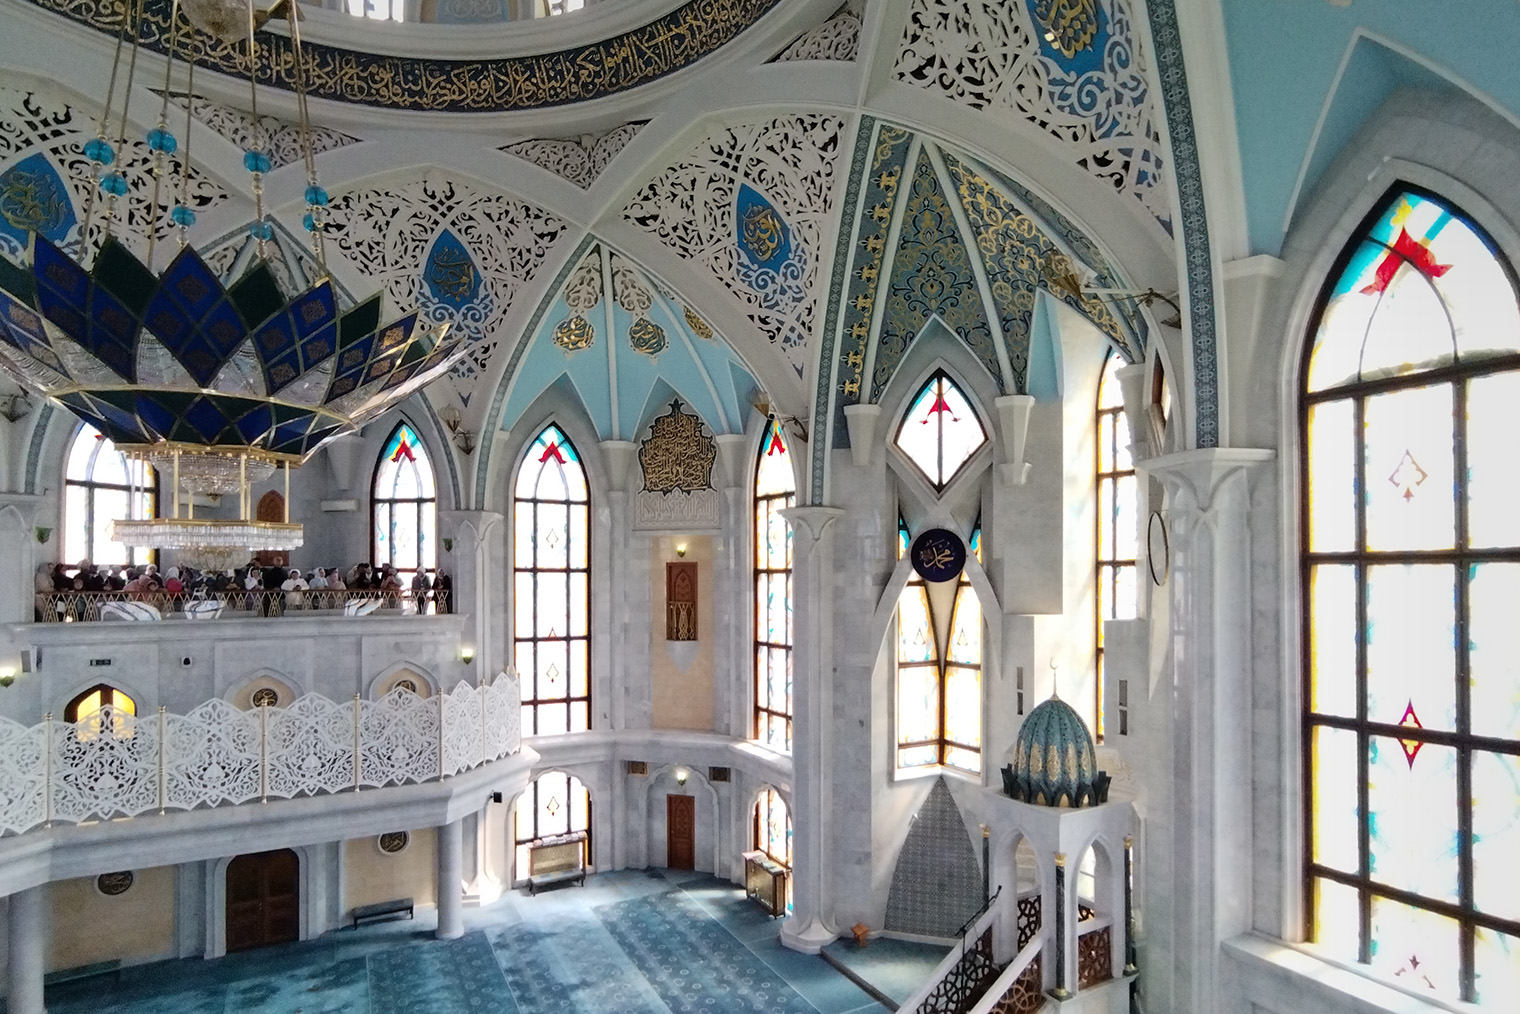 Ажурный смотровой балкон в мечети